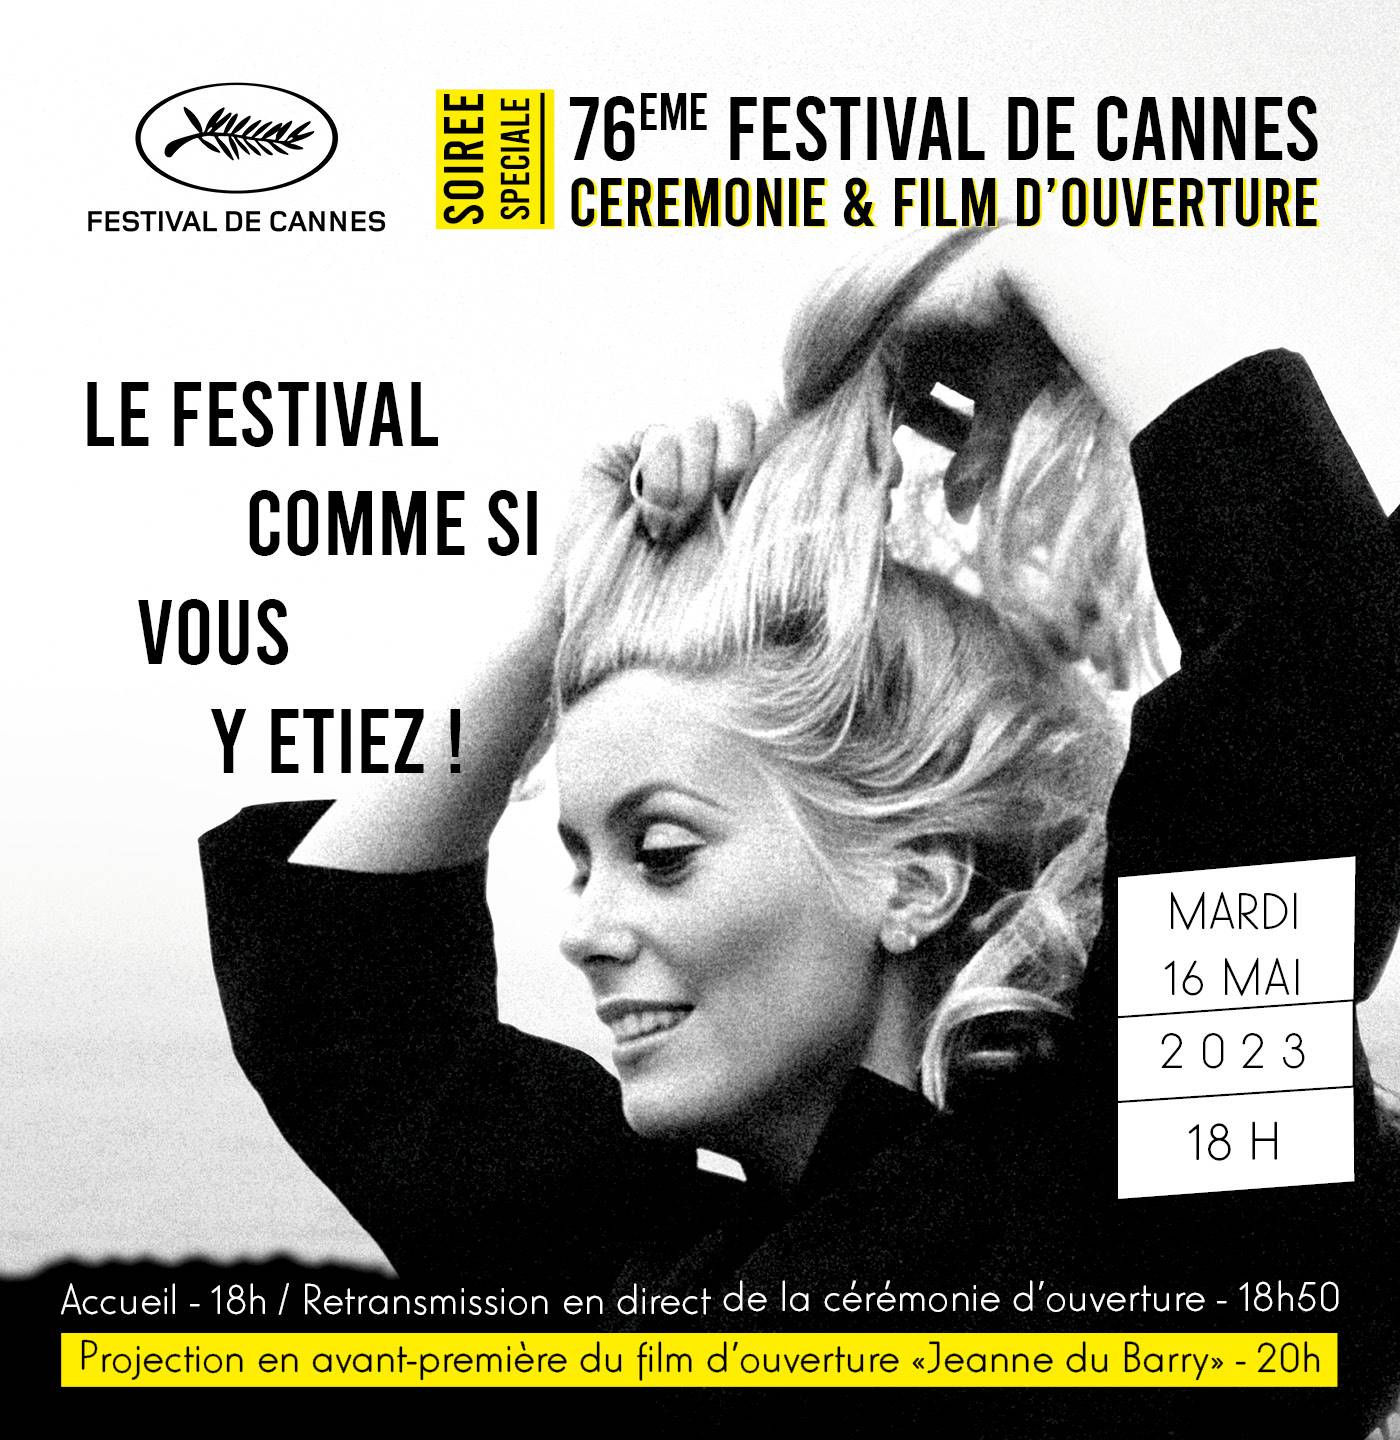 PASSÉ - FESTIVAL de Cannes 2023: Cérémonie d'ouverture & avant-première du film sélectionné "Jeanne du Barry"